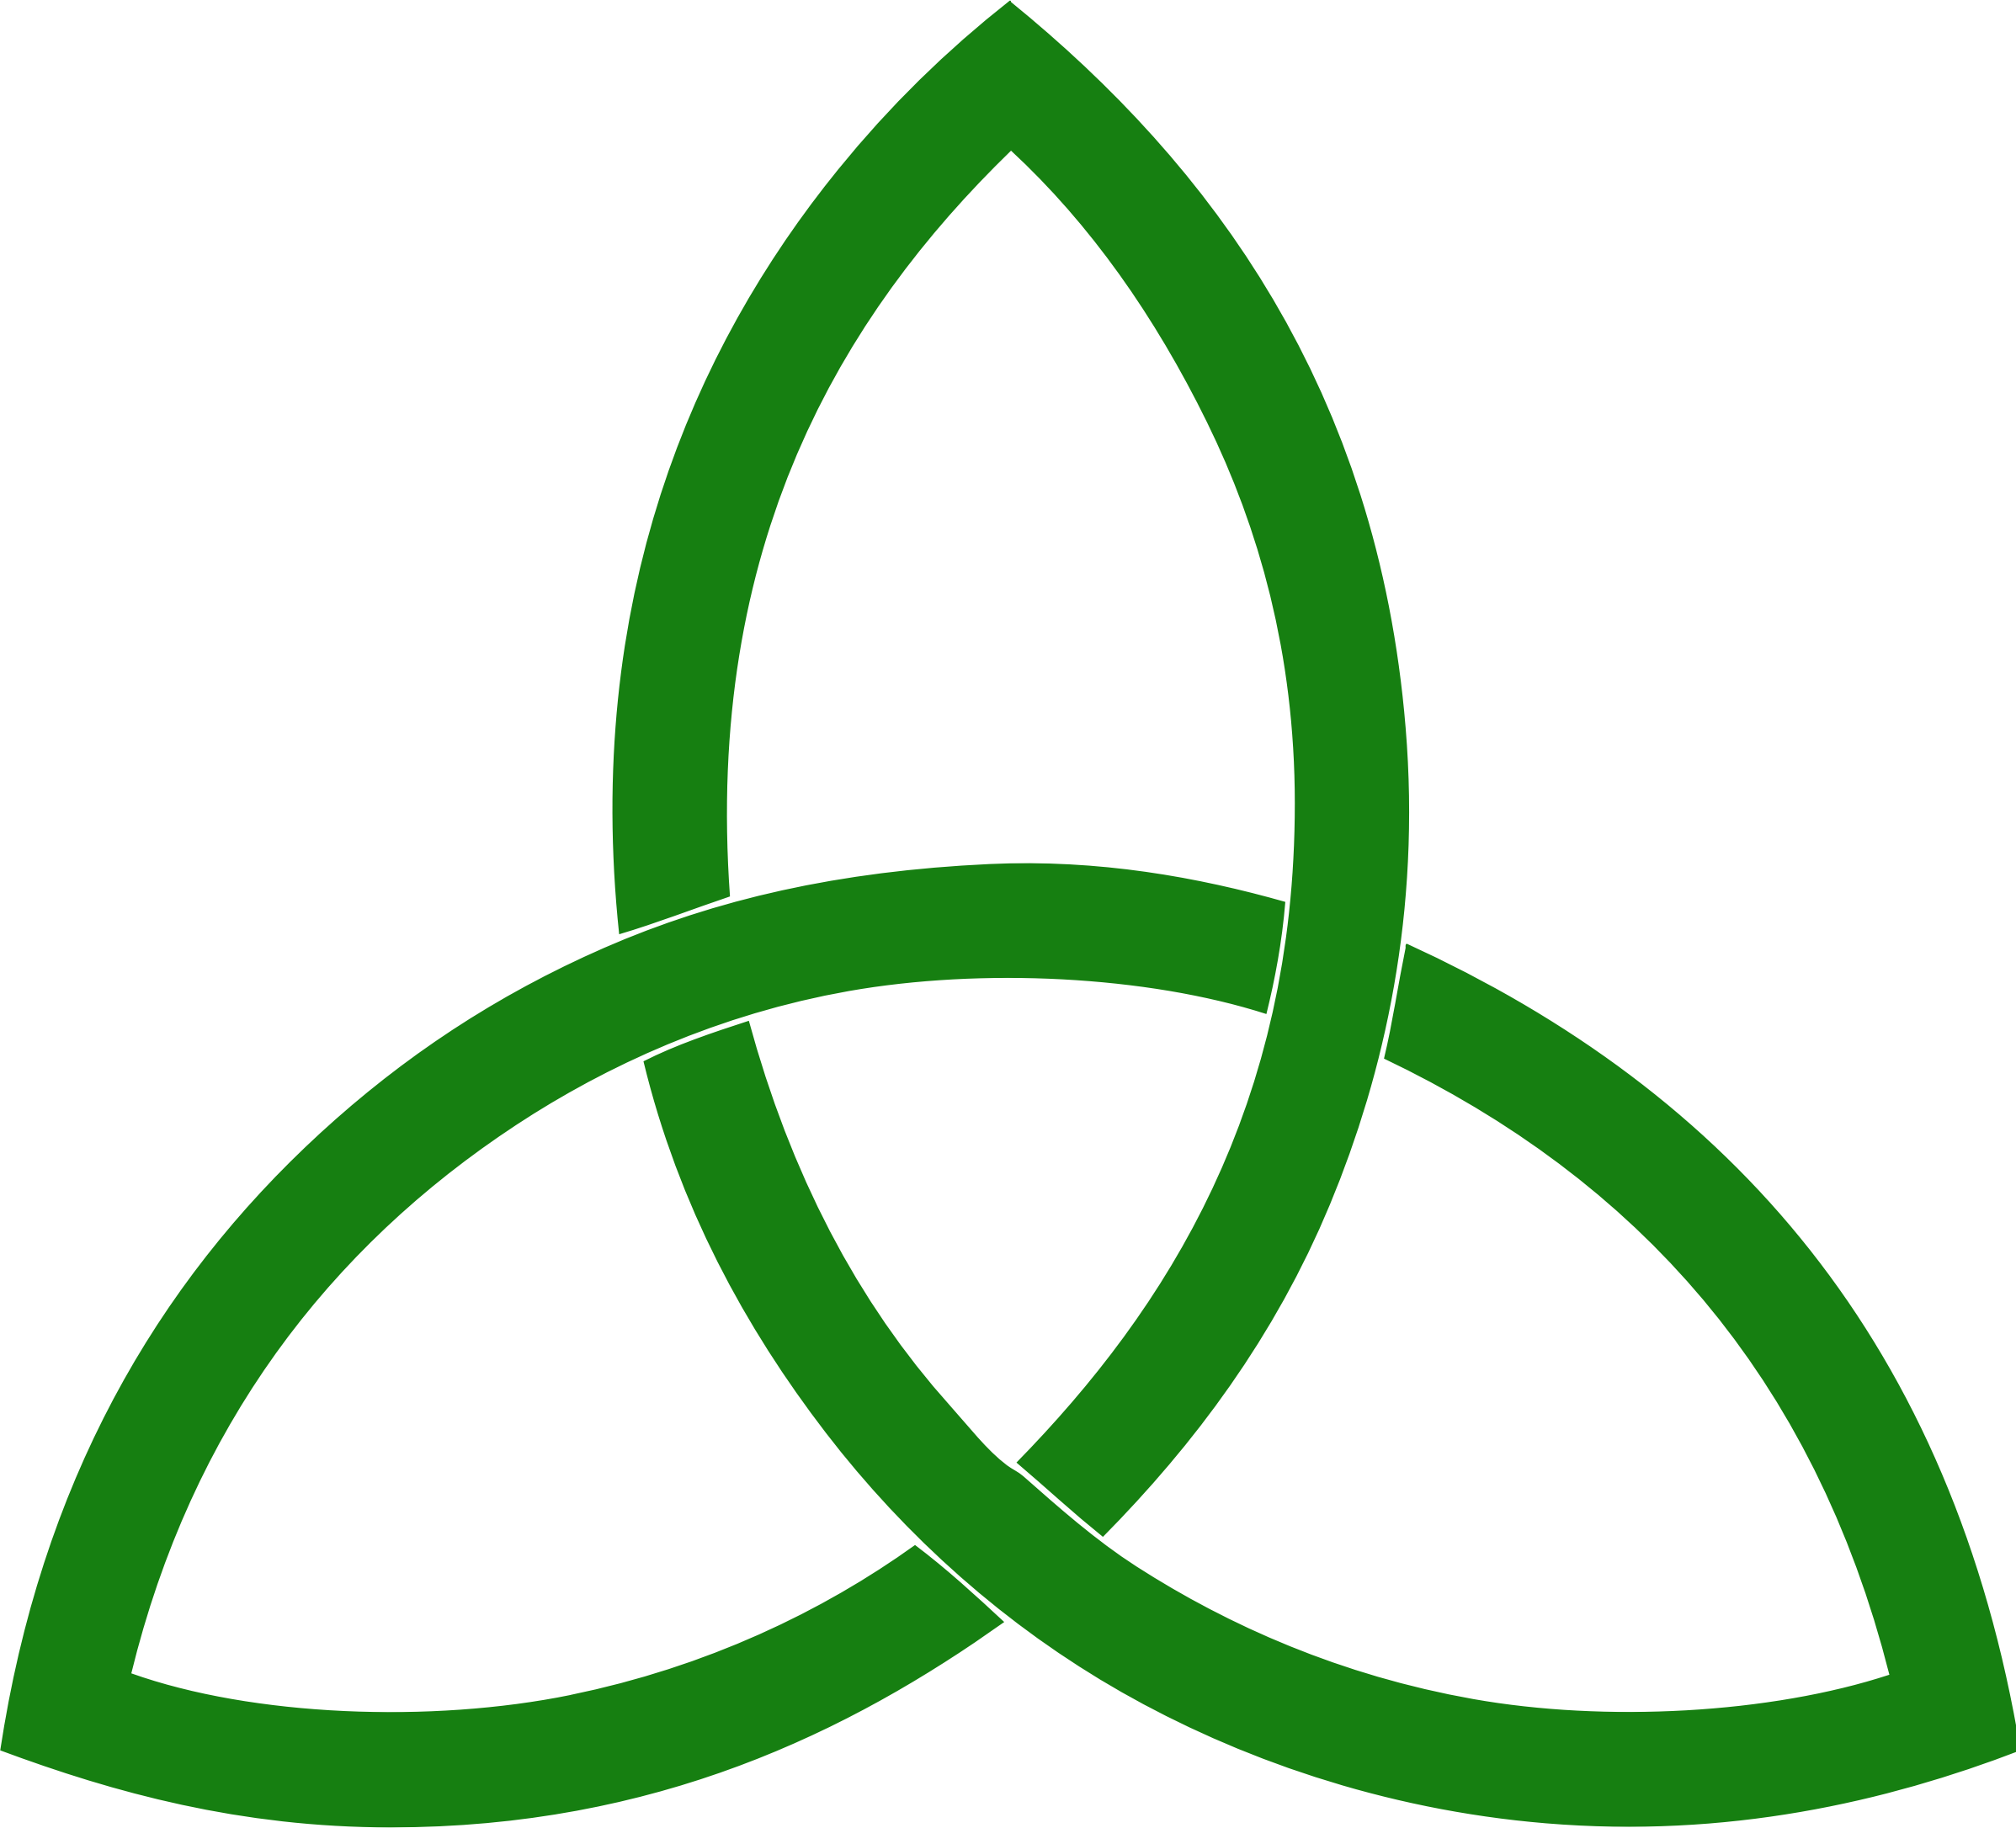 Символ 3 скопировать. Триглав трикветр. Кельтский трикветр символ. Кельтский символ Троицы(Triquetra). Трилистник - христианский символ Святой Троицы..